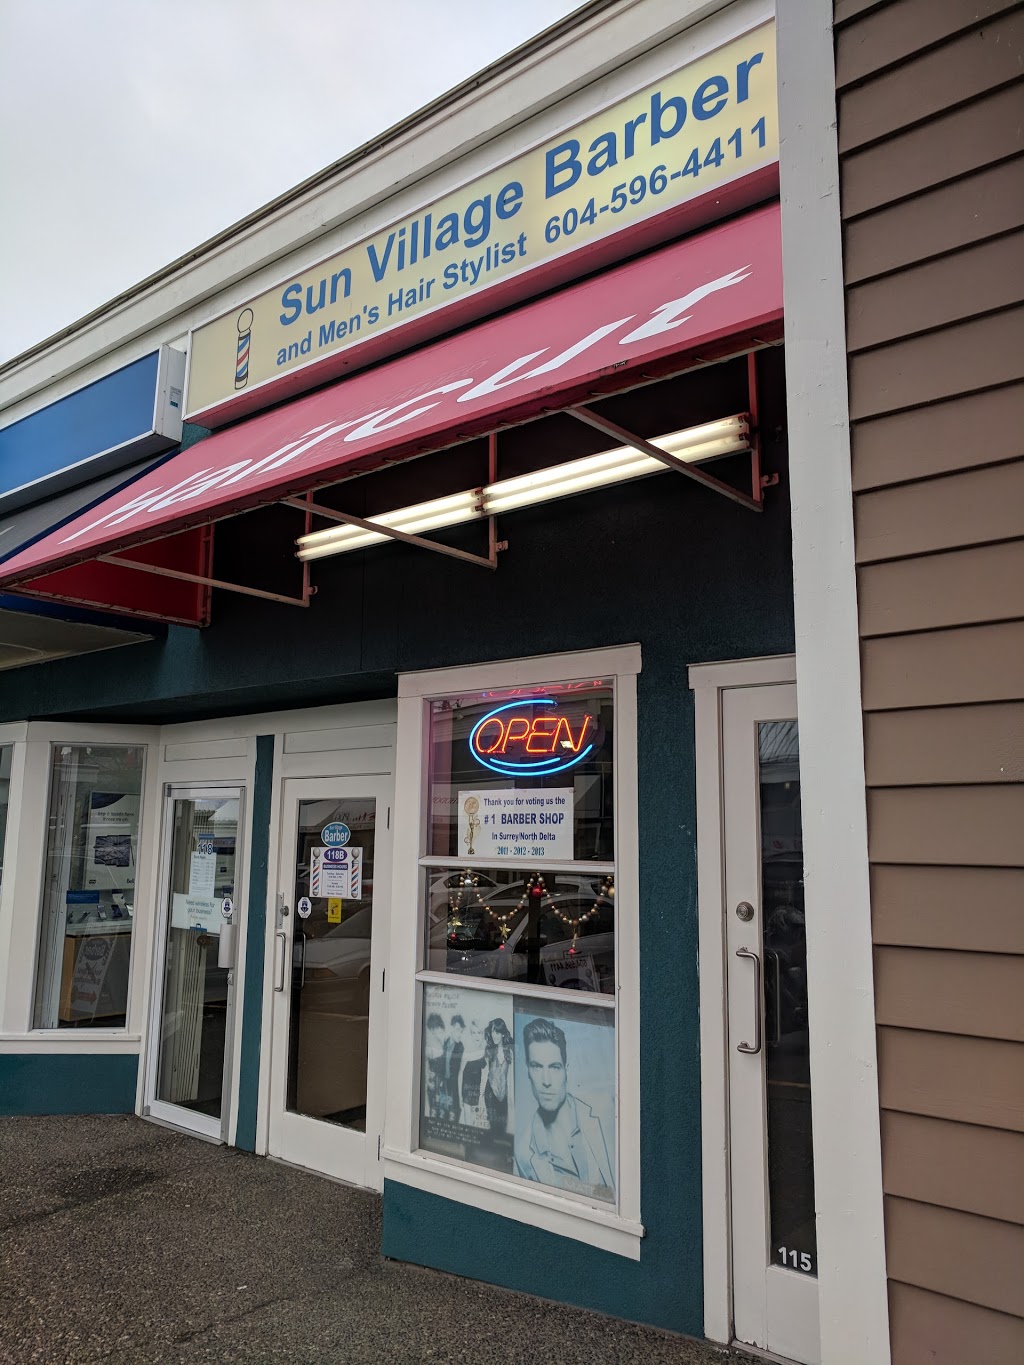 Sun Village Barber Shop | 6345 120 St, Delta, BC V4E 1C8, Canada | Phone: (604) 596-4411